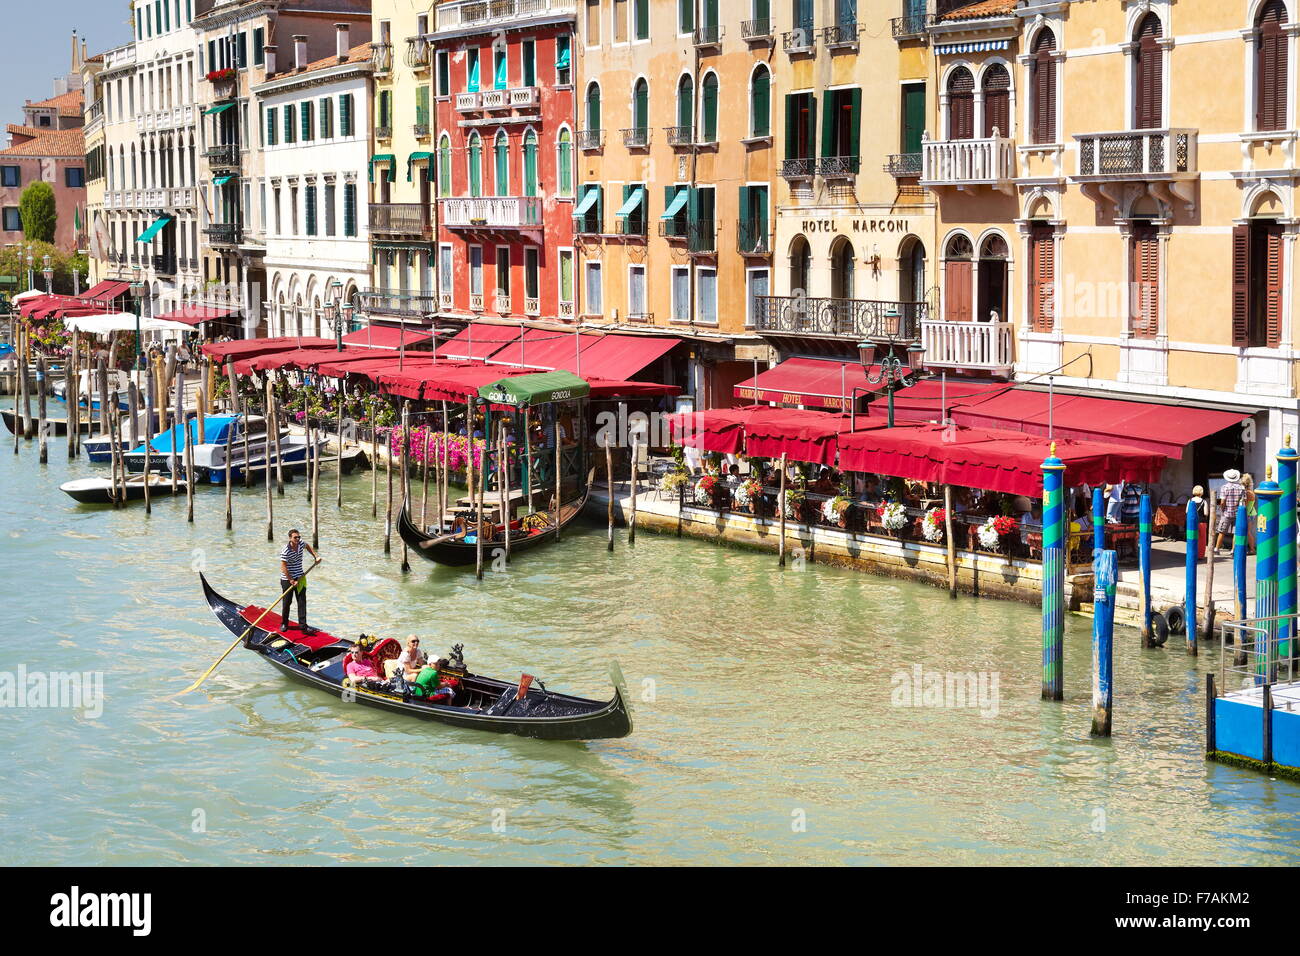 Venezia vista dal Ponte di Rialto - gondola con turisti sul Grand Canal, Venezia, Italia Foto Stock